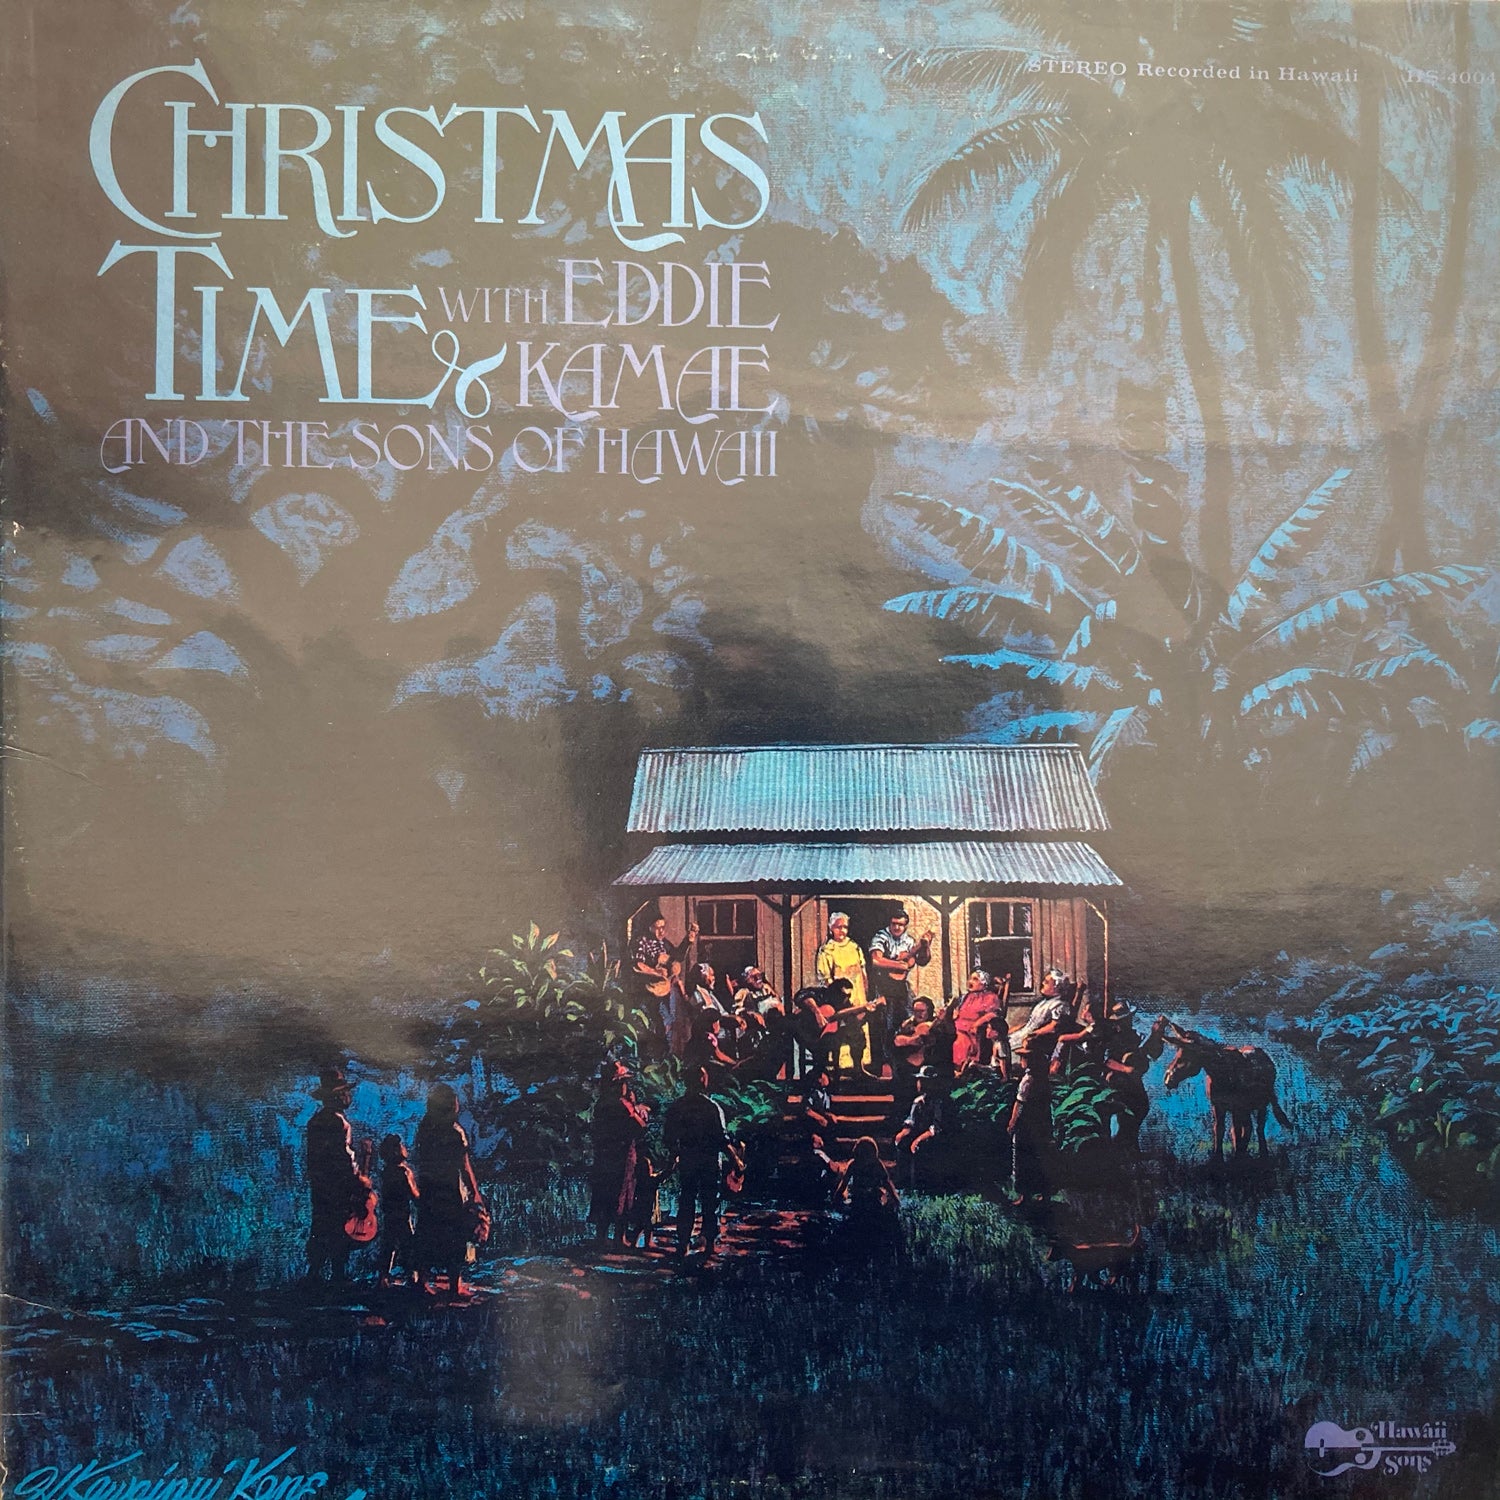 Eddie Kamae and The Sons of Hawaii - Christmas Time